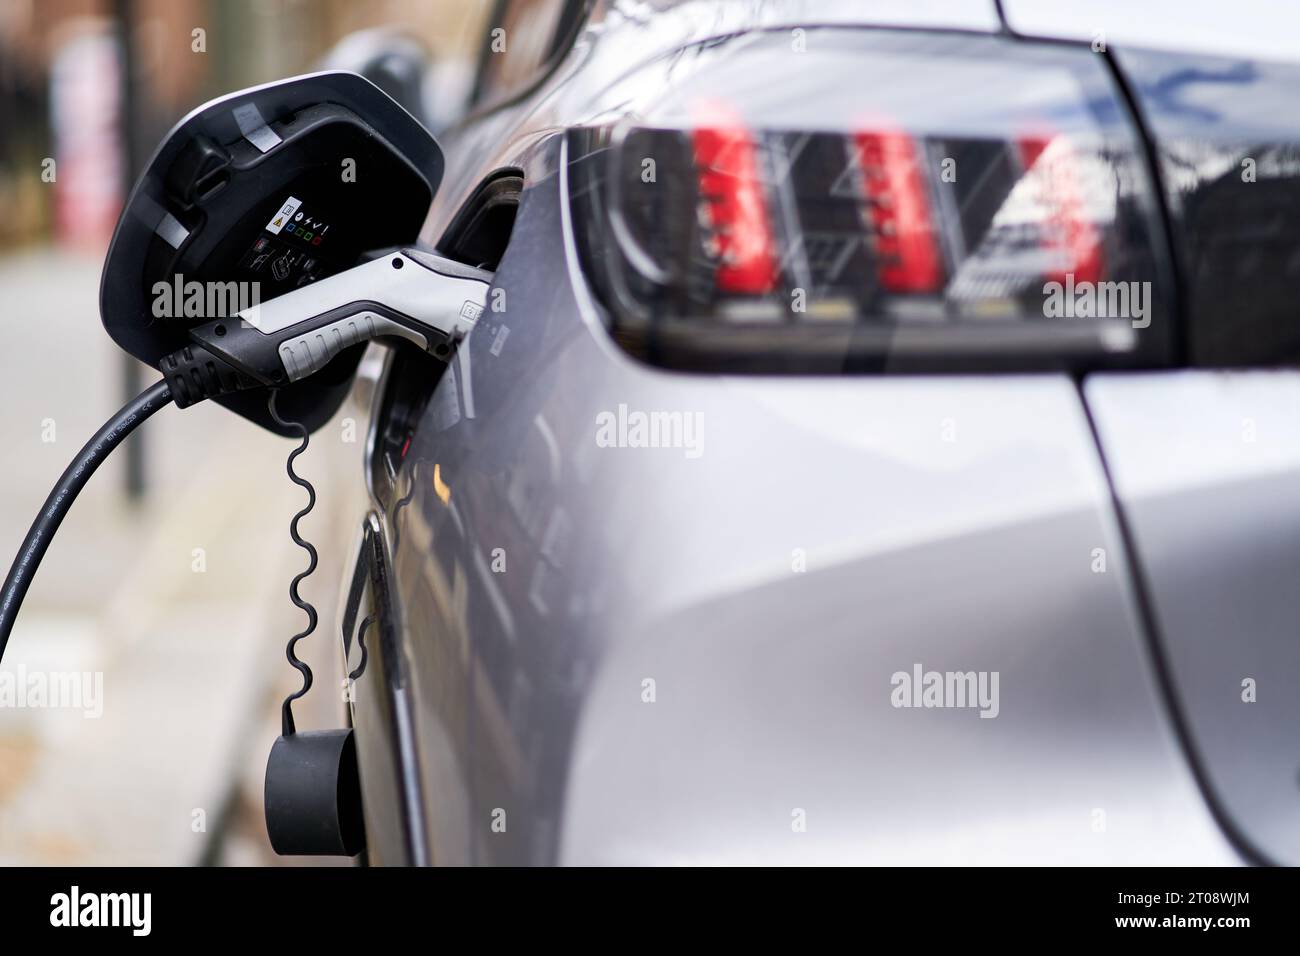 Foto del file datata 05/03/21 di un'auto elettrica Peugeot collegata a un punto di ricarica per veicoli elettrici. La proporzione di auto nuove immatricolate il mese scorso a batteria elettrica era inferiore a un anno prima, come mostrano i nuovi dati. Solo il 16,6% delle registrazioni a settembre erano puramente elettriche rispetto al 16,9% dello stesso mese del 2022, ha dichiarato la Society of Motor Manufacturers and Traders. Data di emissione: Giovedì 5 ottobre 2023. Foto Stock